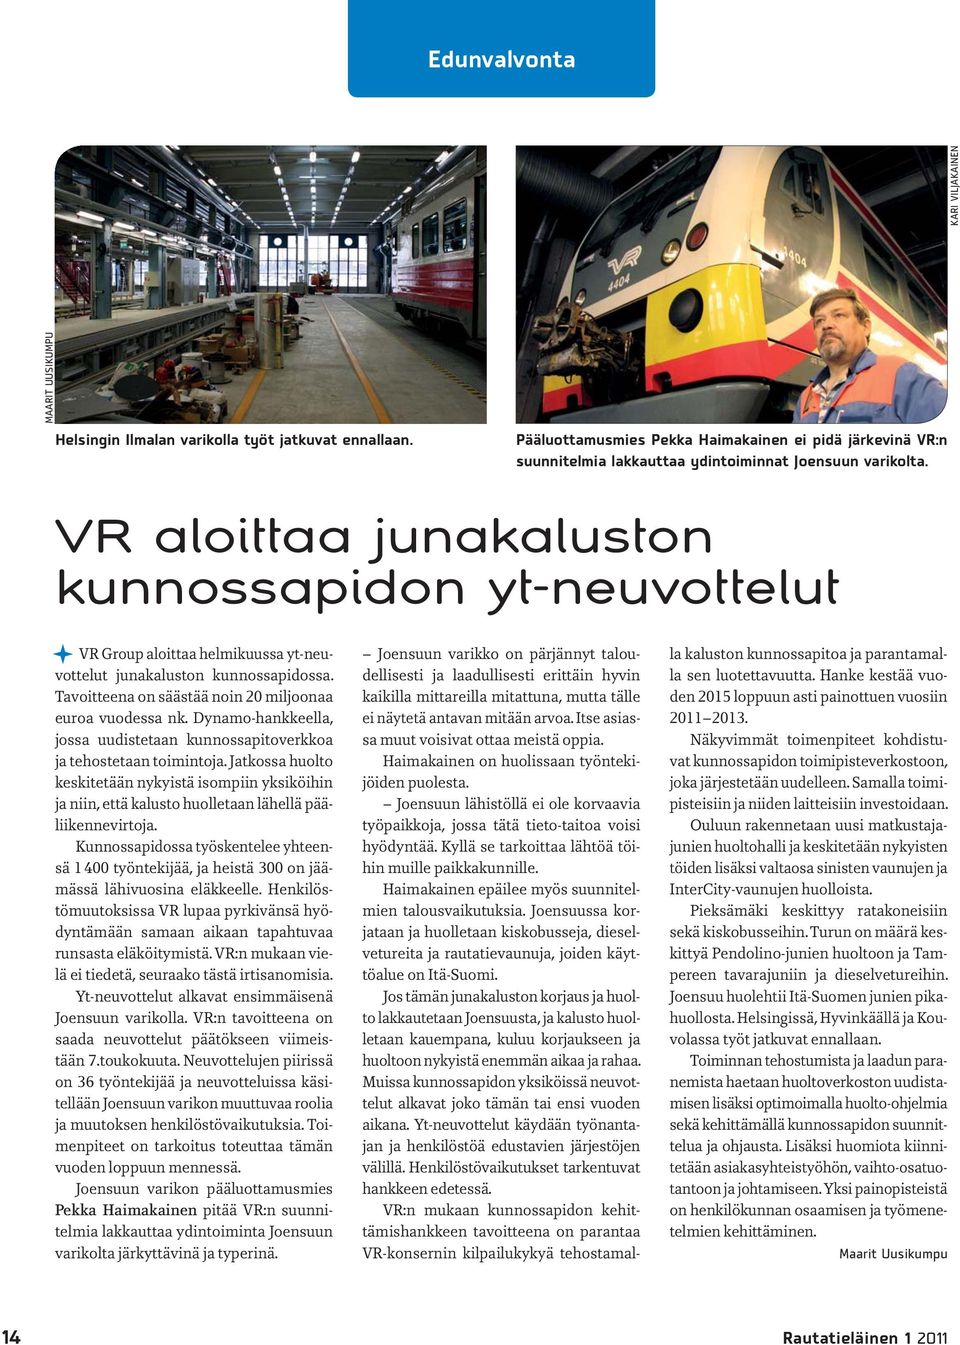 VR aloittaa junakaluston kunnossapidon yt-neuvottelut VR Group aloittaa helmikuussa yt-neuvottelut junakaluston kunnossapidossa. Tavoitteena on säästää noin 20 miljoonaa euroa vuodessa nk.